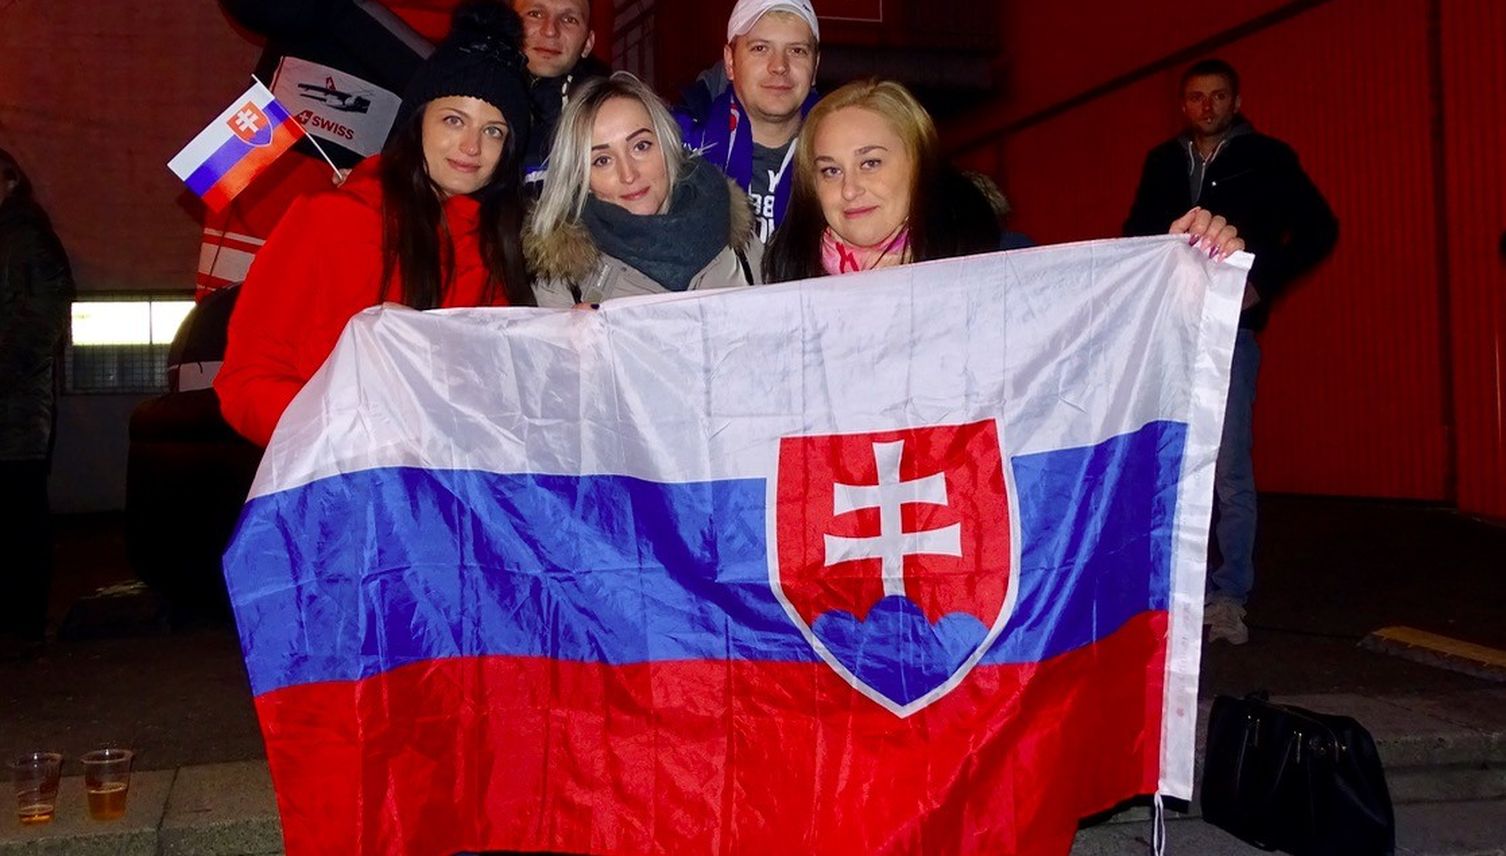 Warum sich slowakische Eishockeyfans nach Luzern verirren